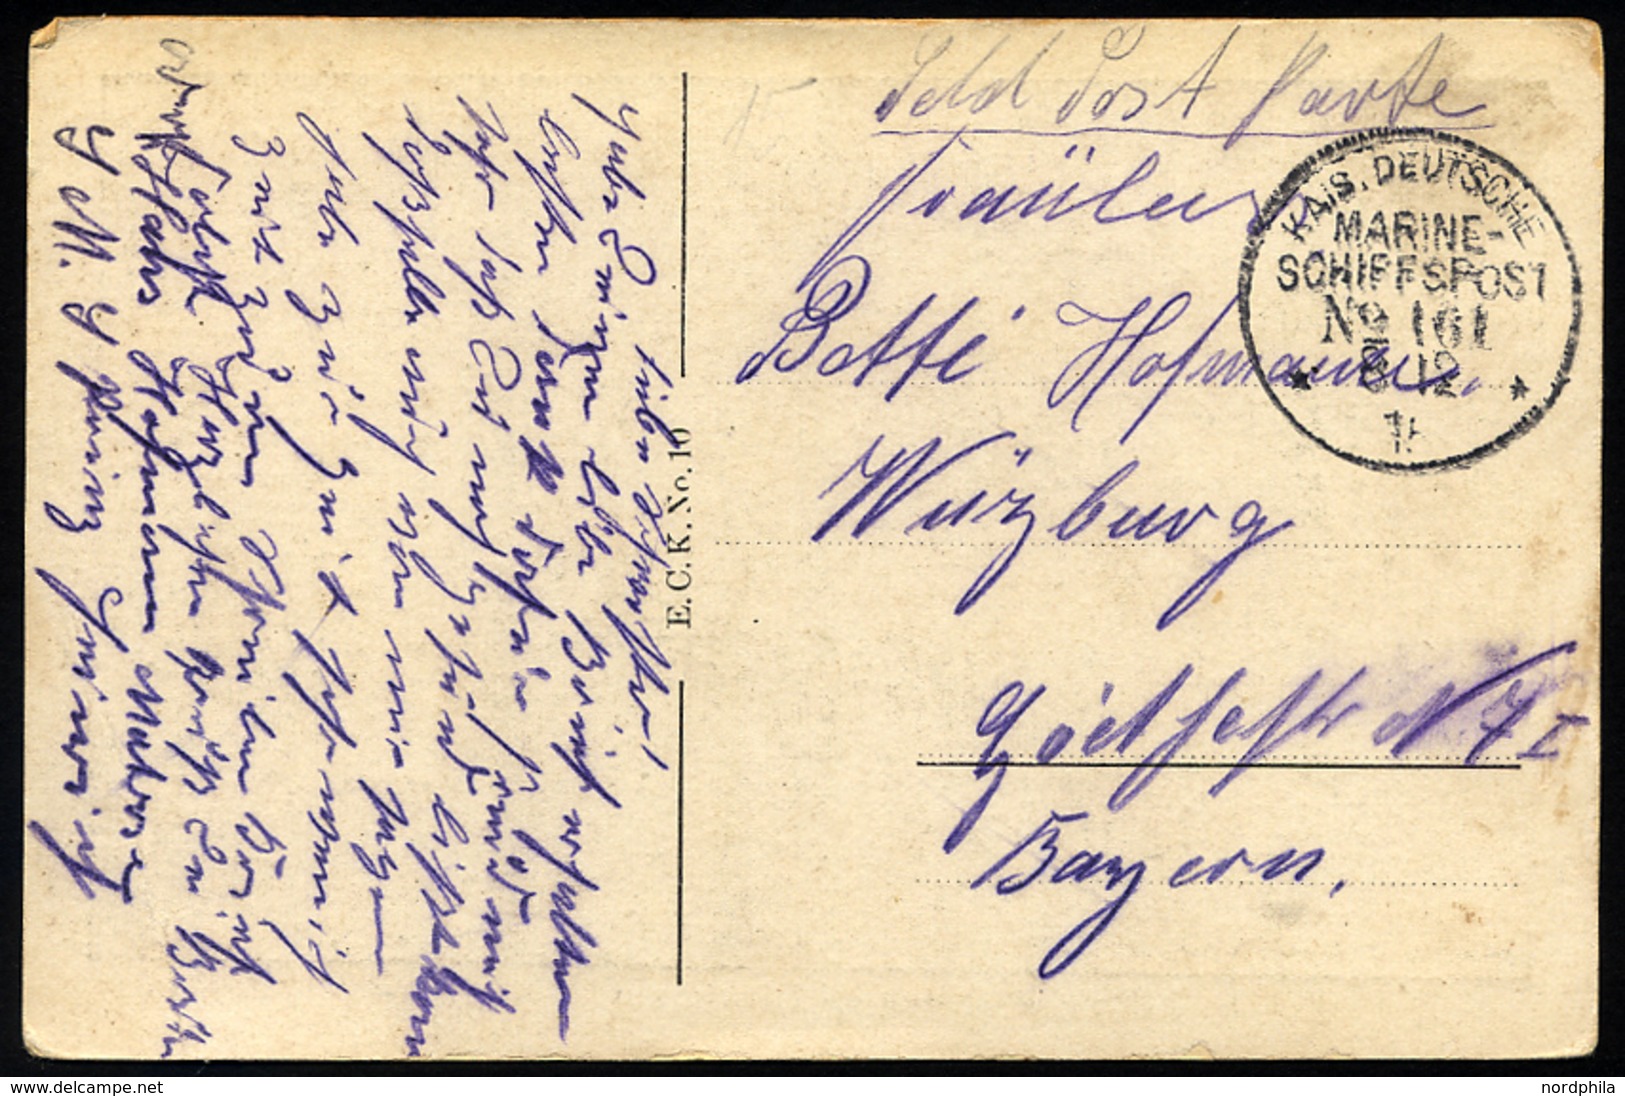 MSP VON 1914 - 1918 161 (Panzerkreuzer PRINZ HEINRICH), 8.12.1916, Feldpost-Ansichtskarte (Leuchtturm Bei Friedrichsort) - Maritime